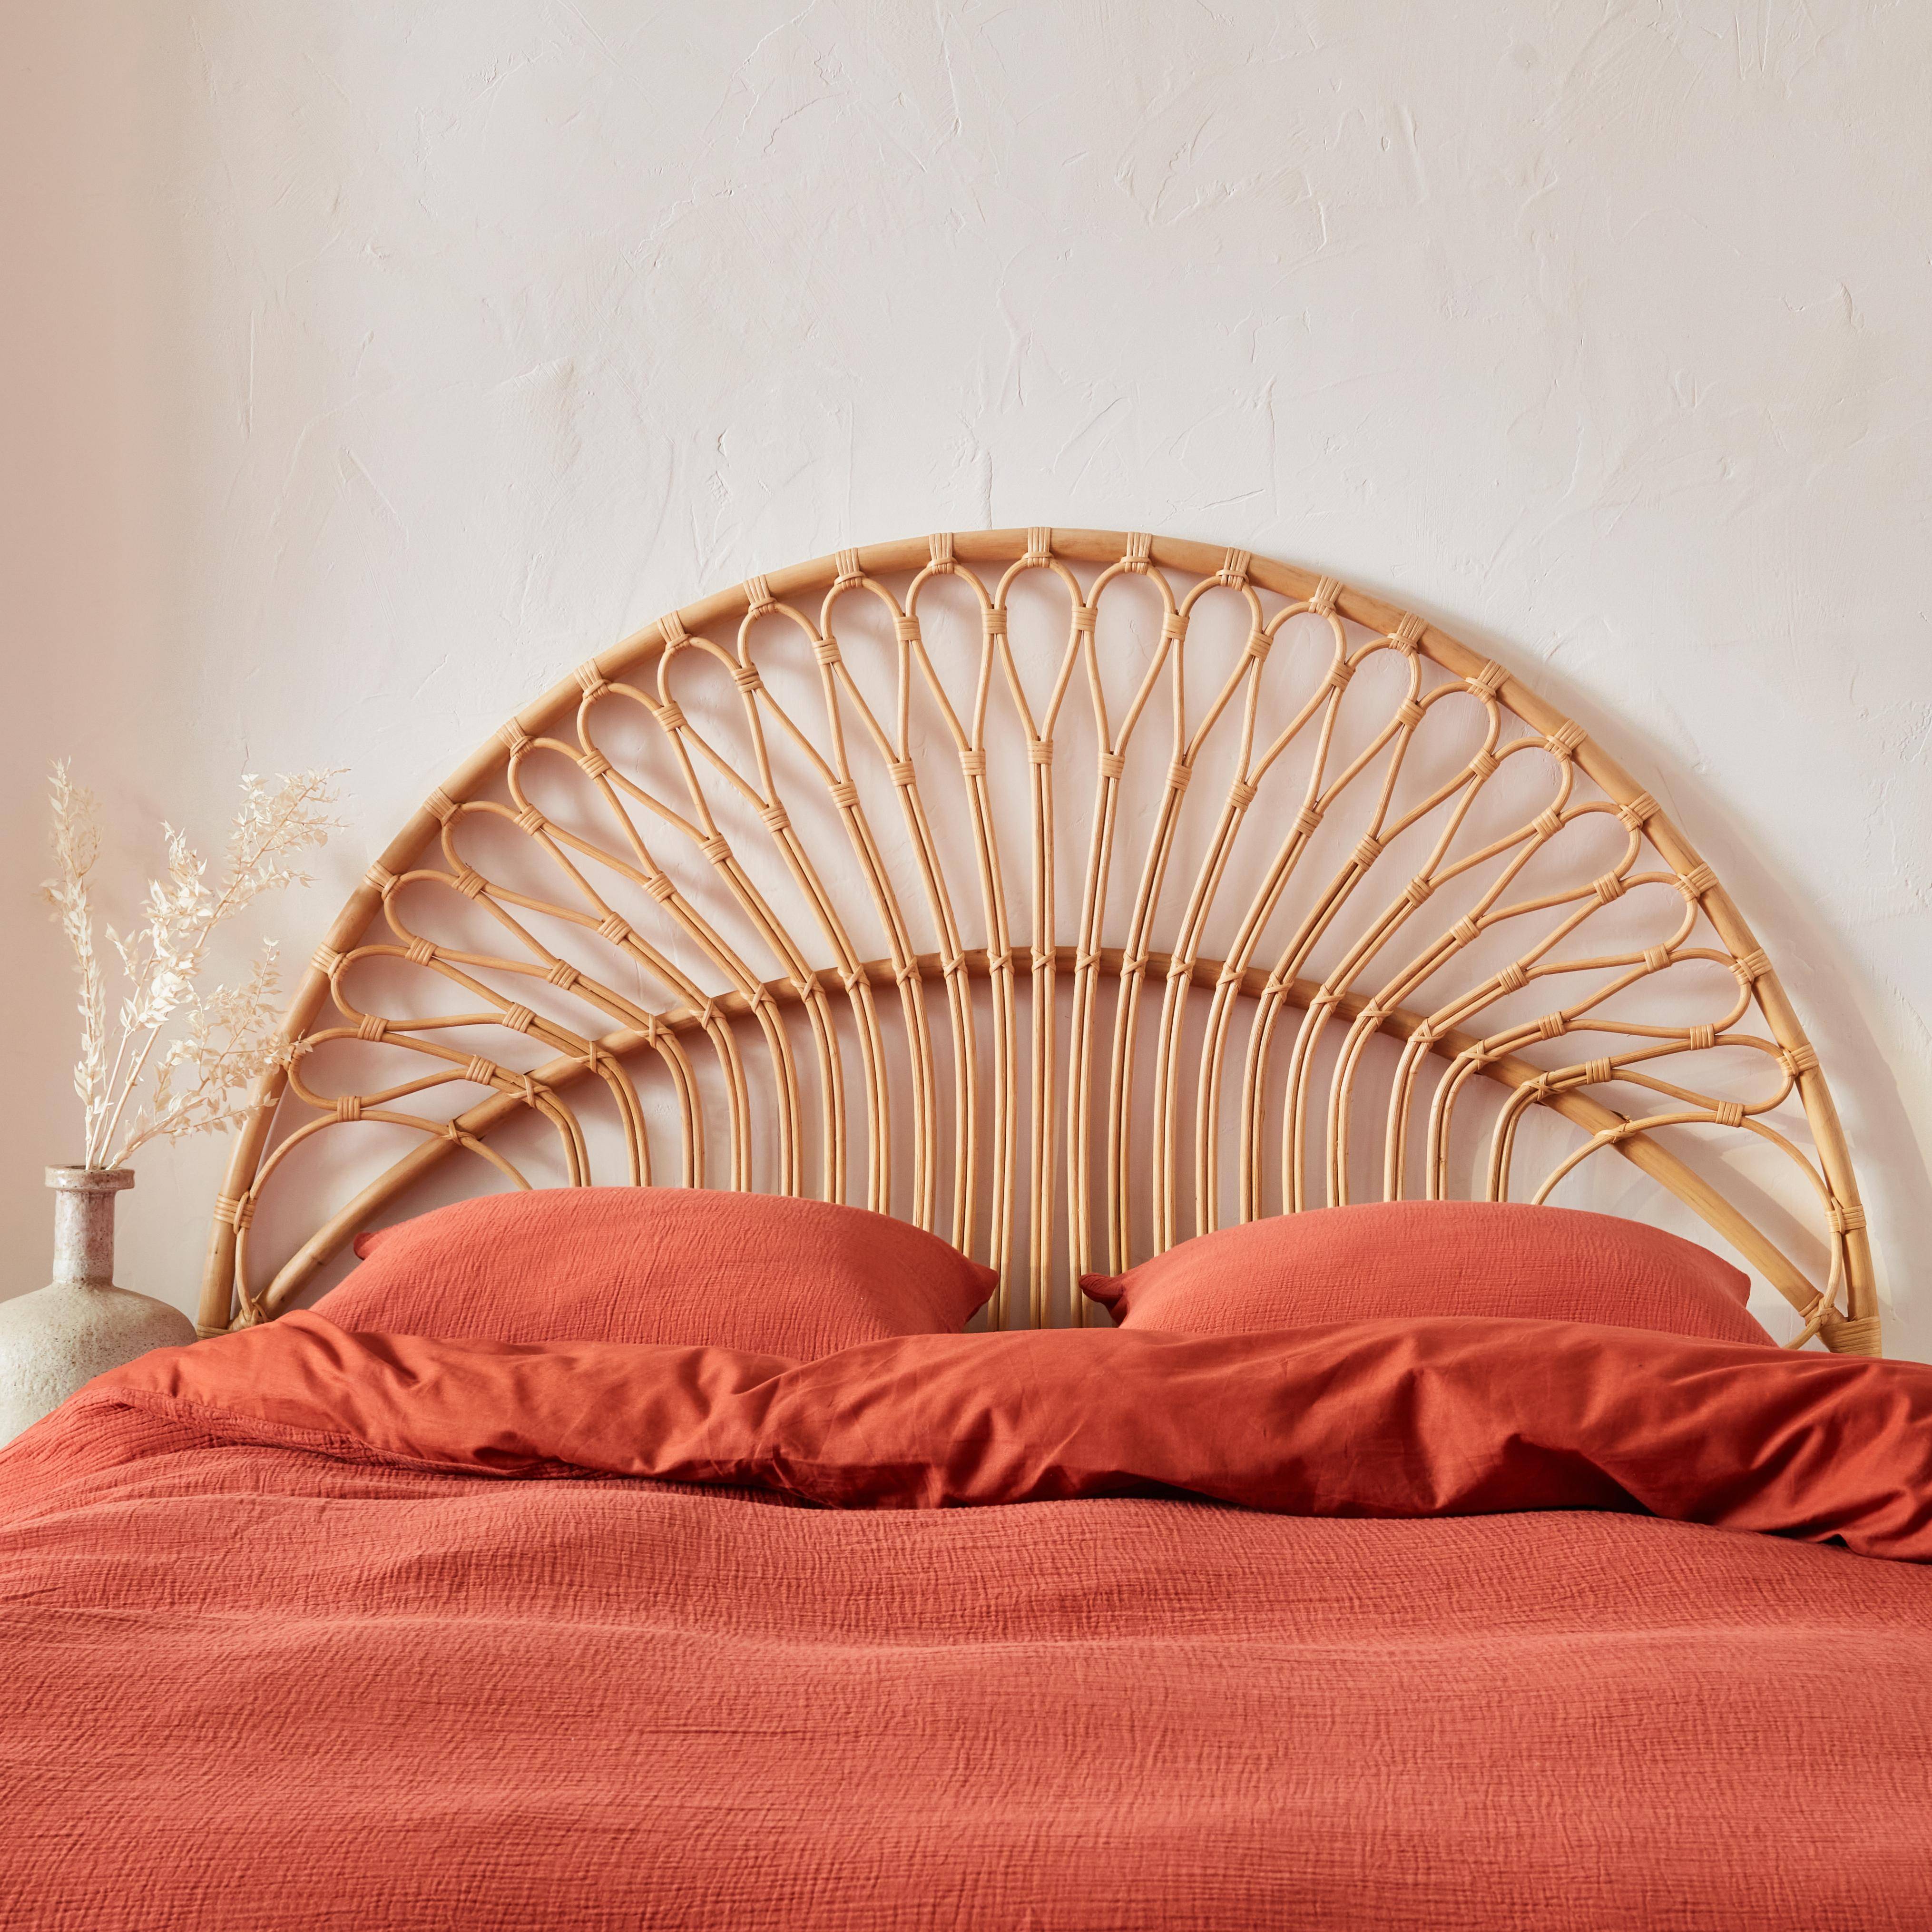 Tête de lit en rotin naturel compatible avec les lits d'une largeur de 160cm, L 160 x P3 x H130cm Photo2